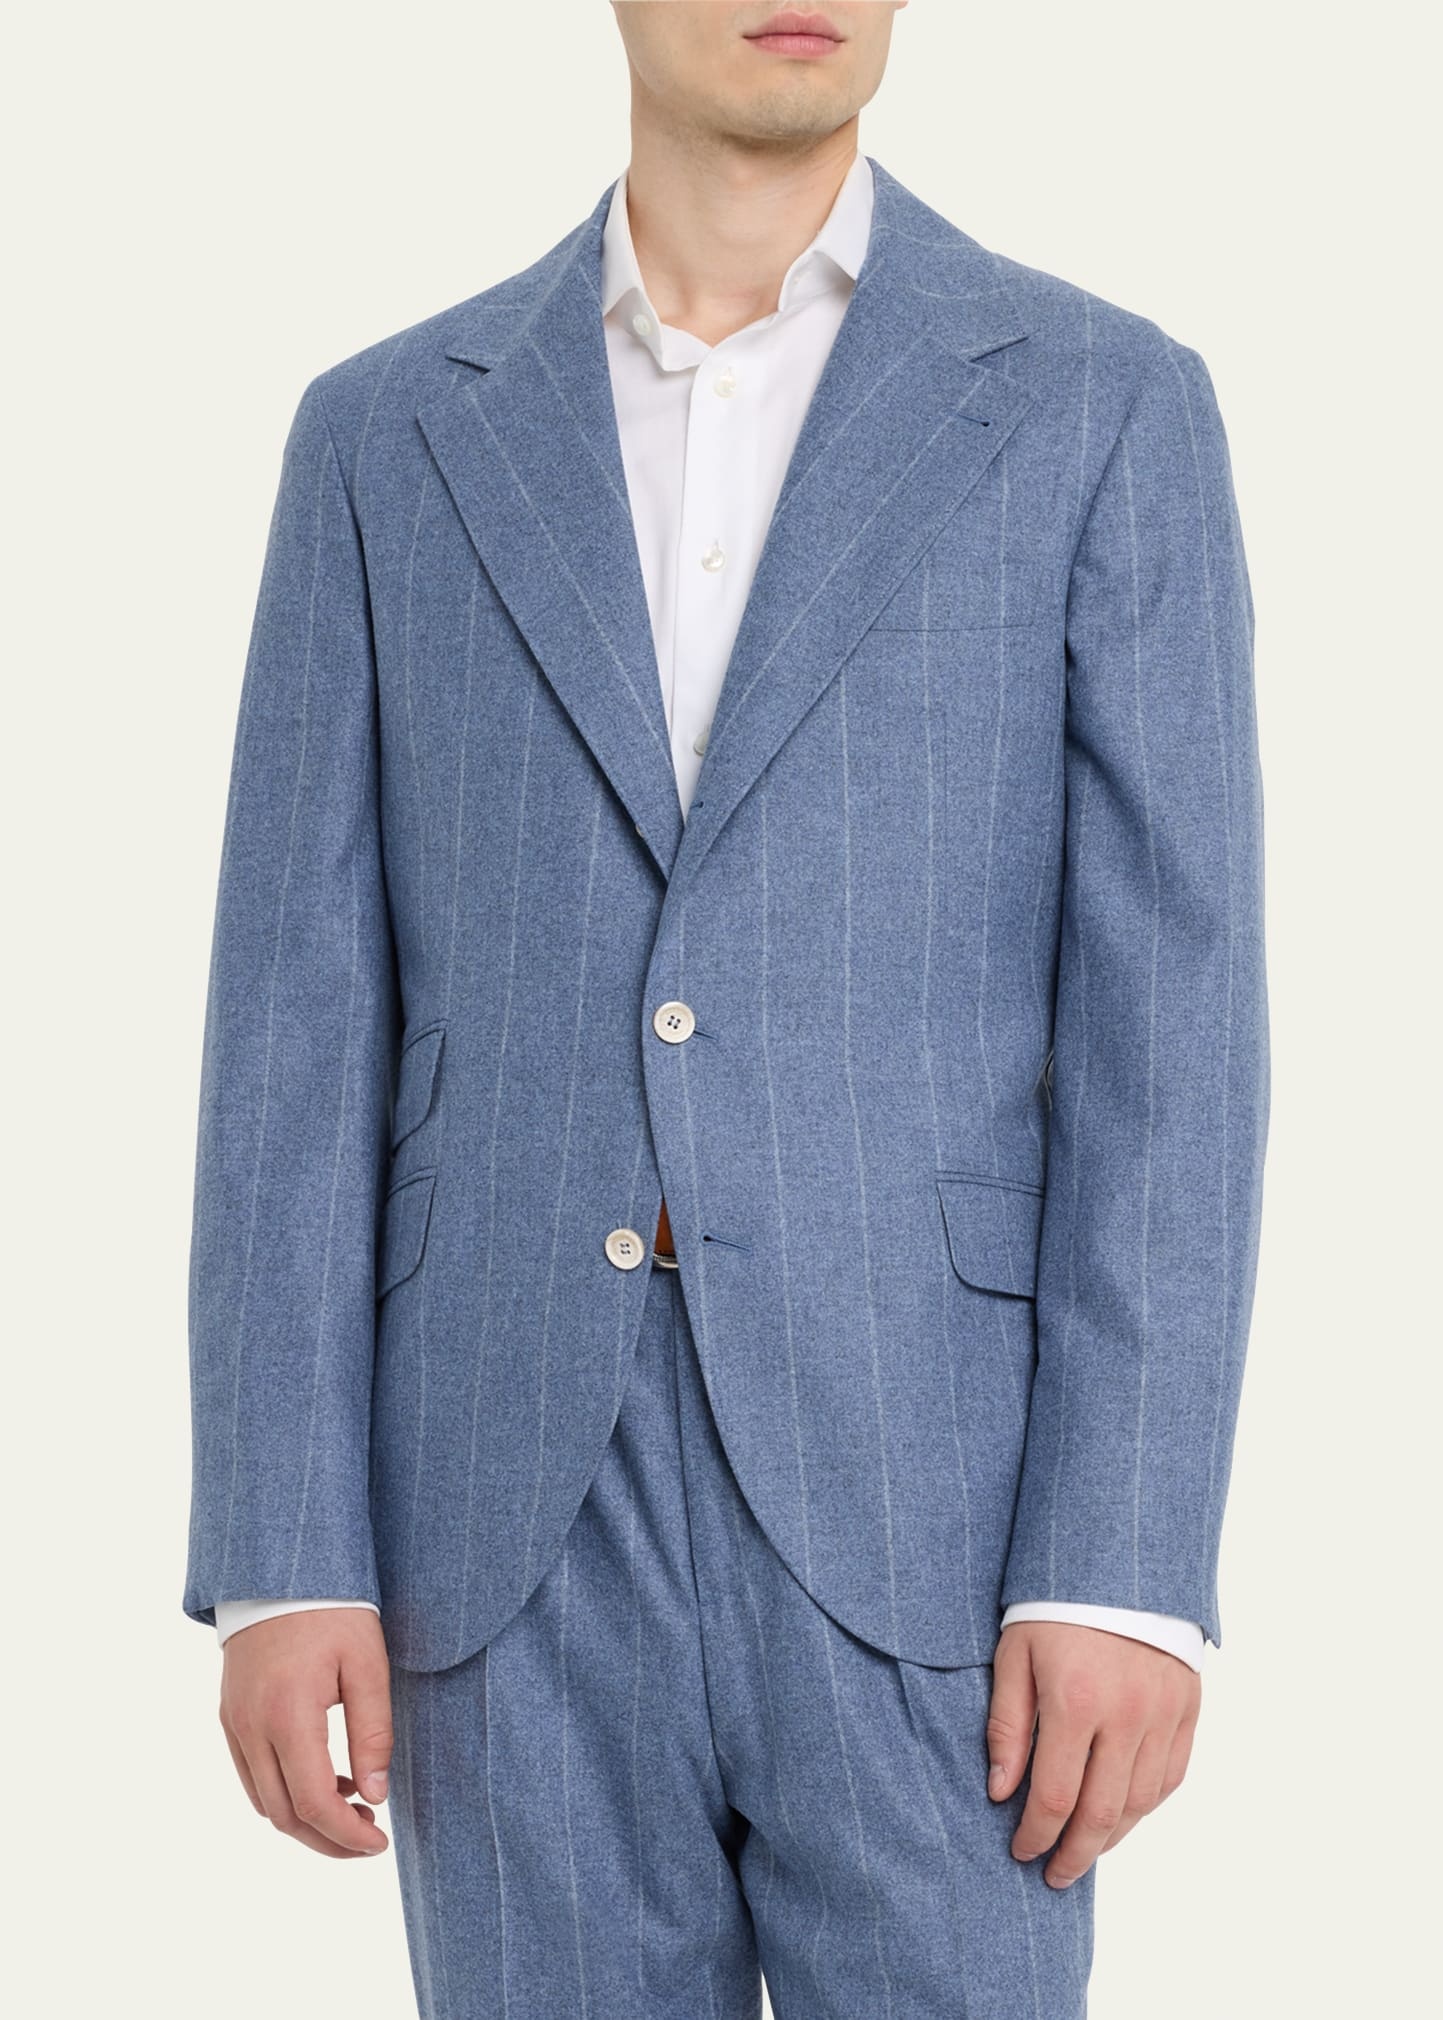 Men's Striped Light Flannel Suit - 4